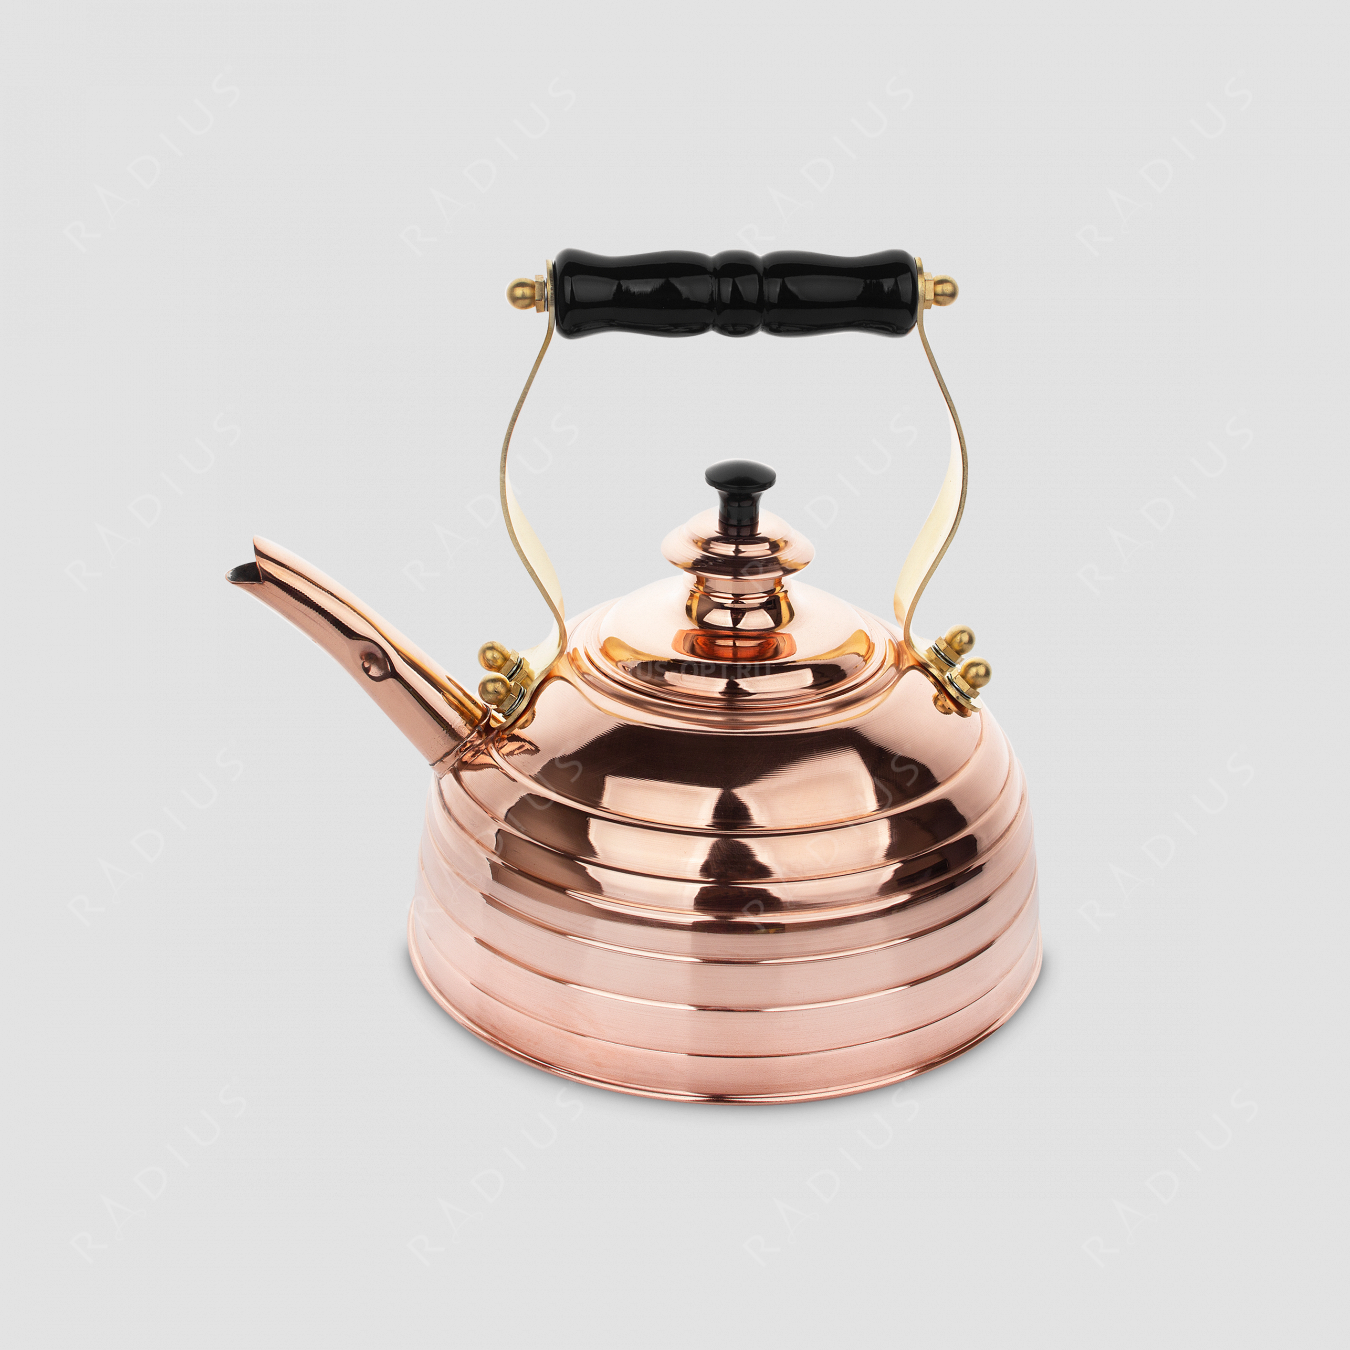 Чайник для плиты (газ и электро) эдвардианской ручной работы, медь, объем 1,7 л, серия Beehive, RICHMOND, Великобритания